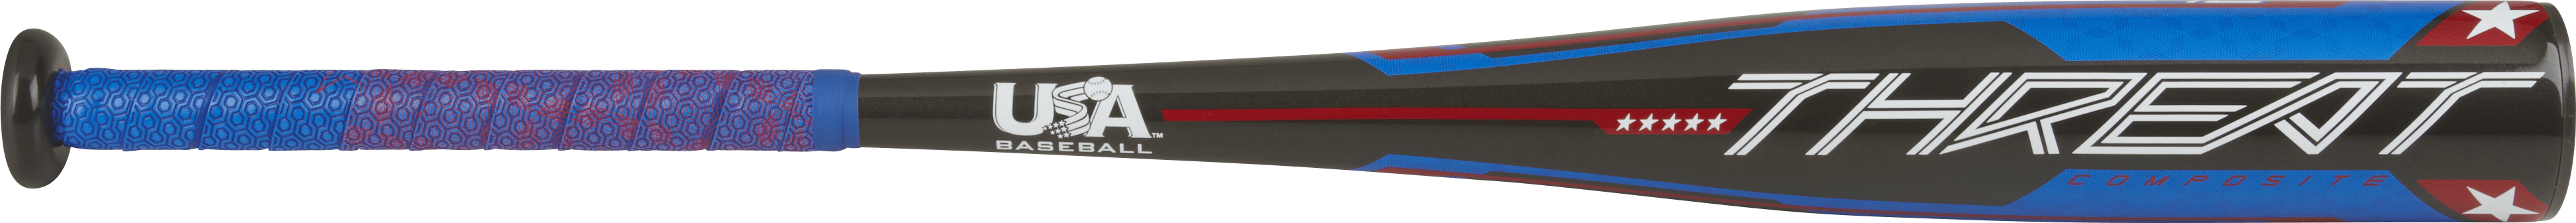 Rawlings 2021 5150 USSSA Coach/Machine Pitch Baseball Bat Series -11 